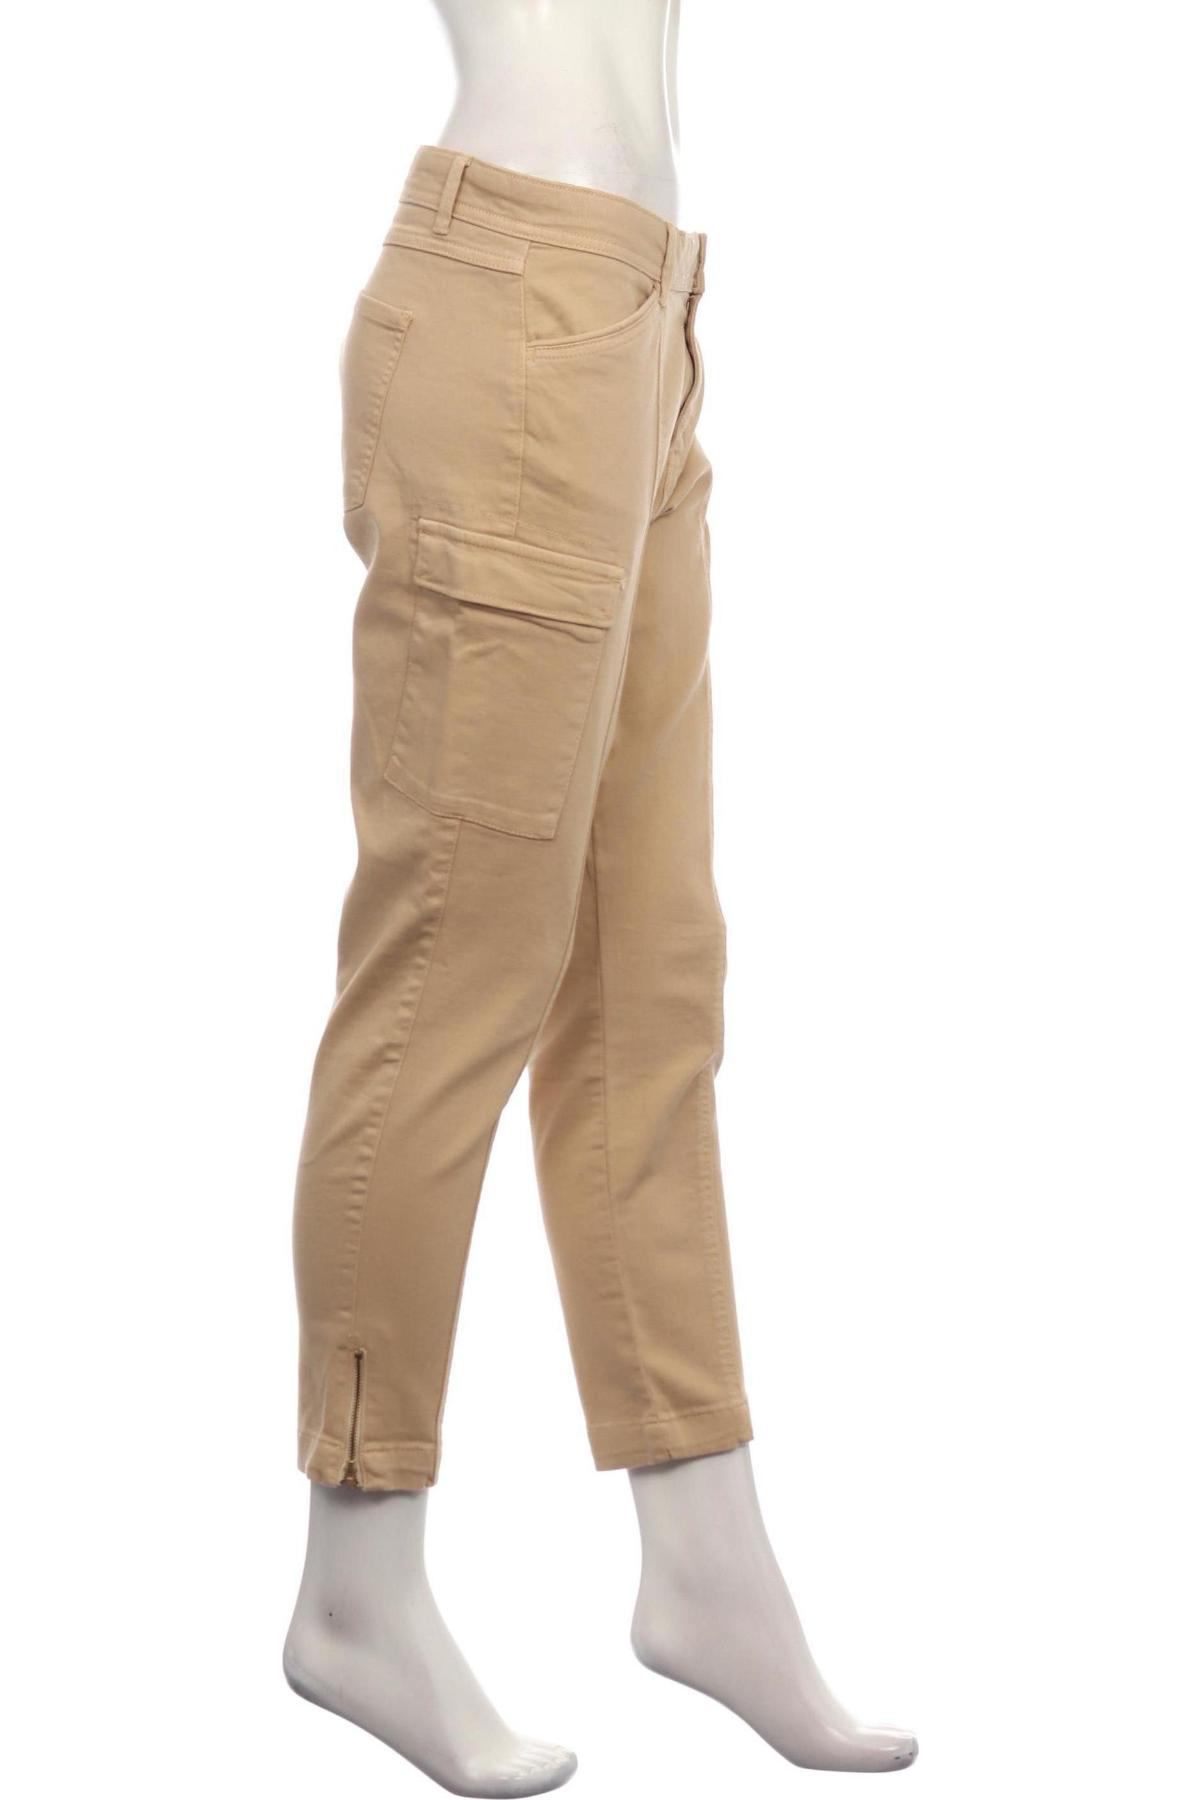 Спортен панталон S.OLIVER3